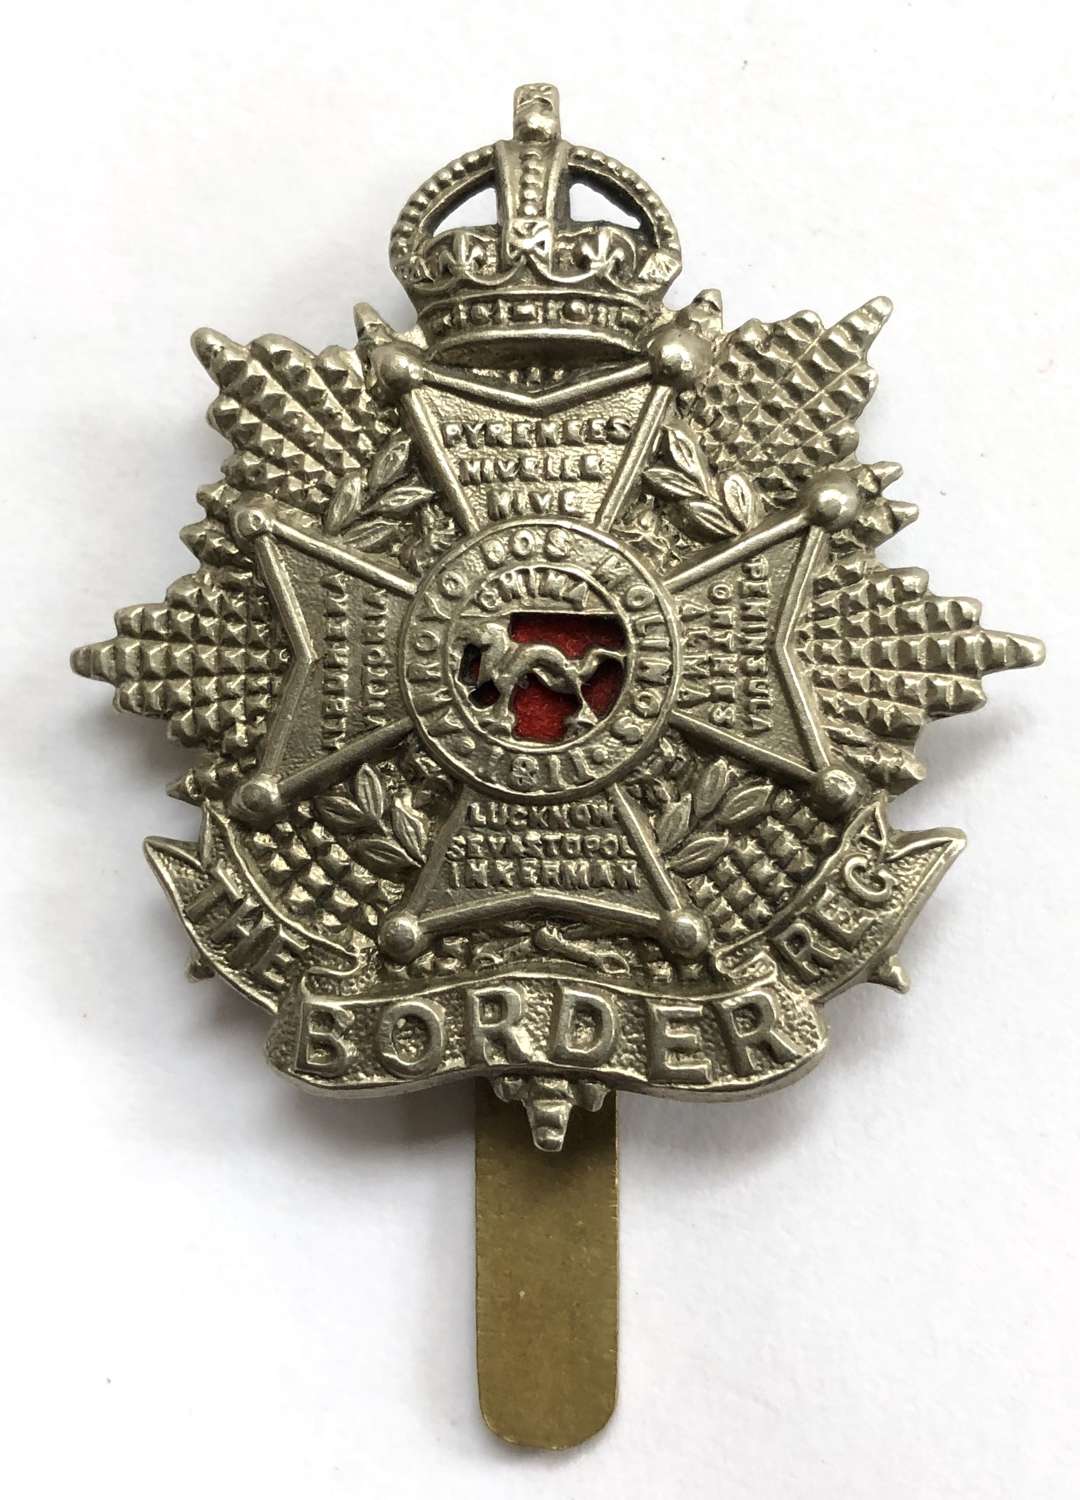 Border Regiment Edwardian small OR’s cap badge circa 1901-05